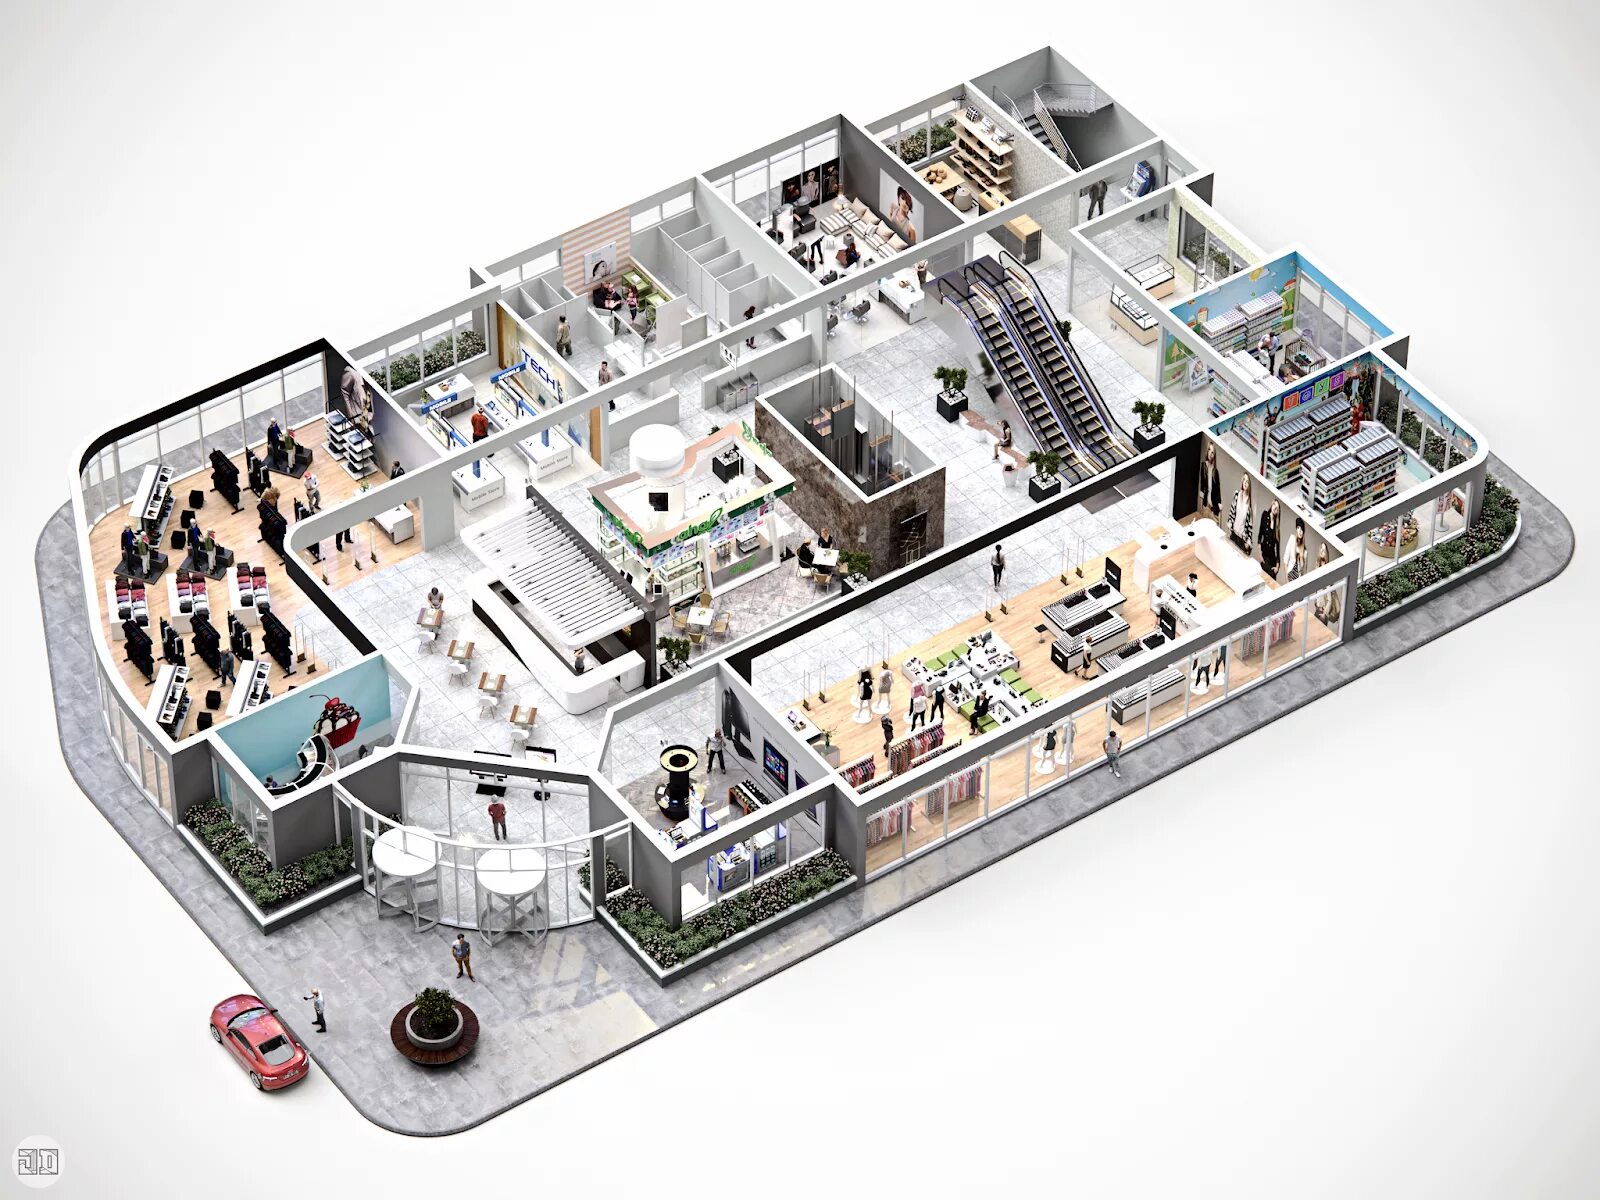 Макет торгового центра. Интерактивный план здания. Трехмерная модель помещения. План магазина 3д. Д3 магазин